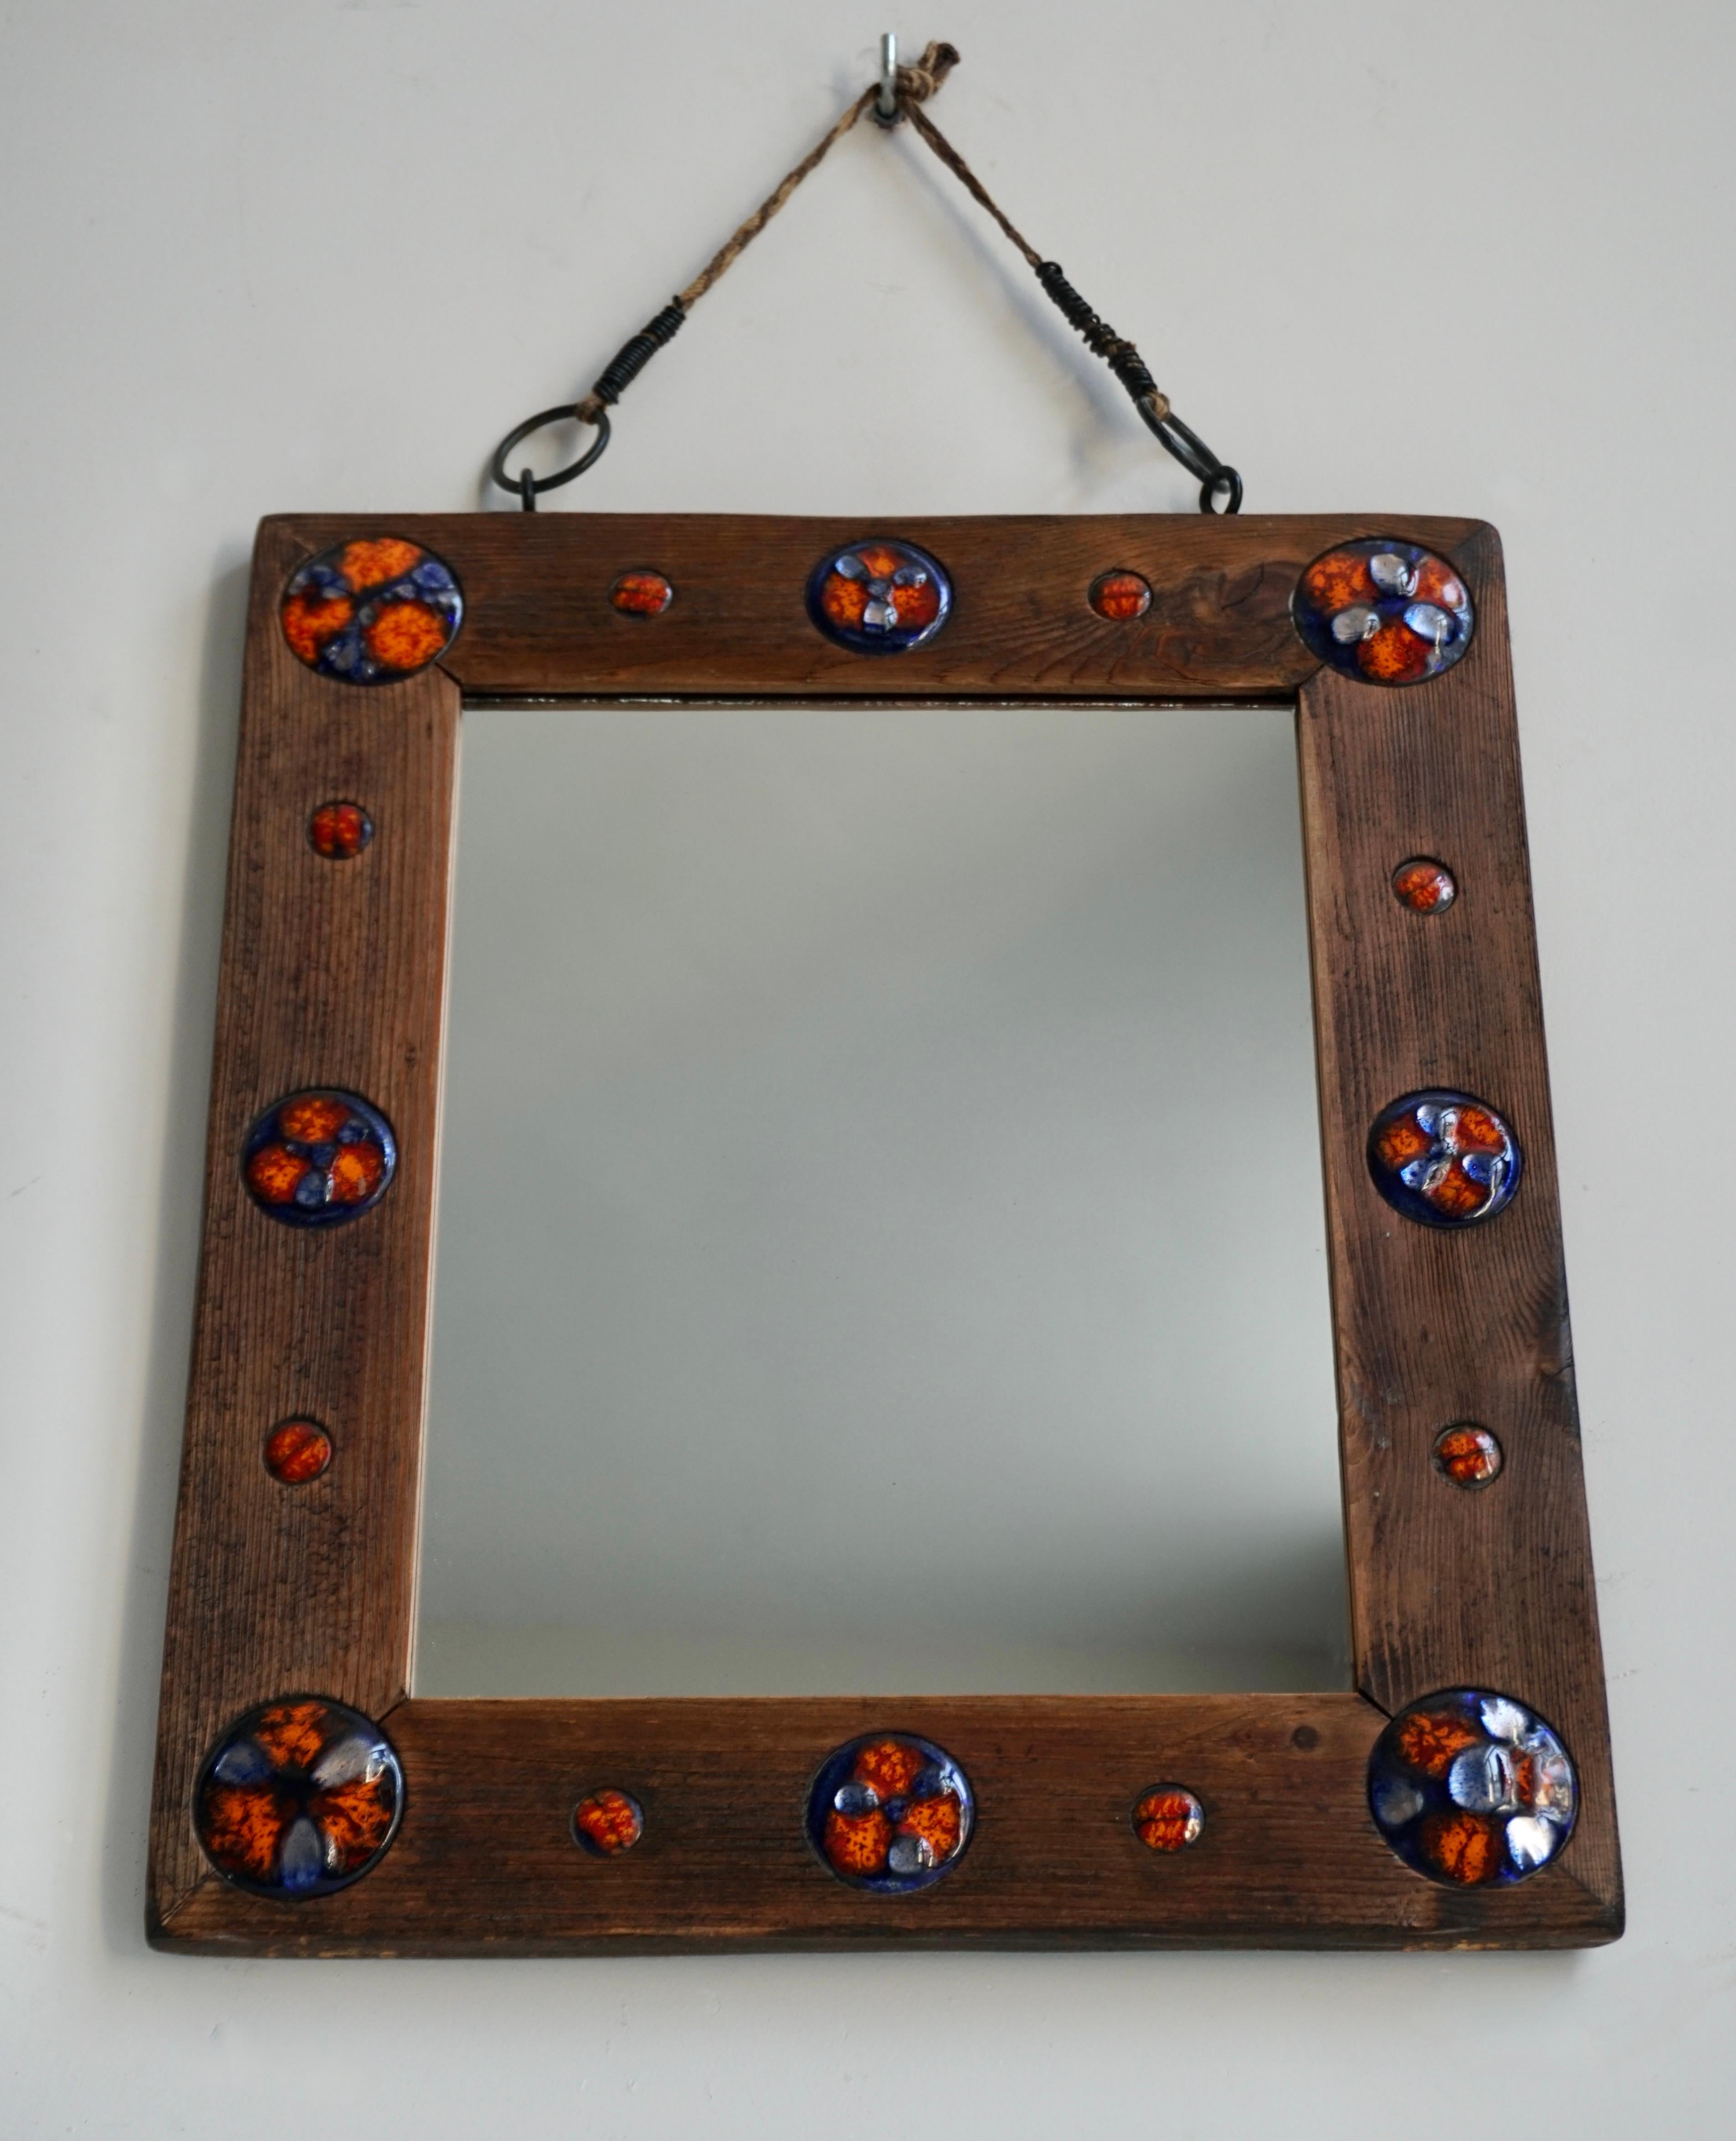 Holzspiegel mit Emailleverzierungen.

Ein rechteckiger Holzspiegel mit farbigen Emailleverzierungen hängt an einem Seil.